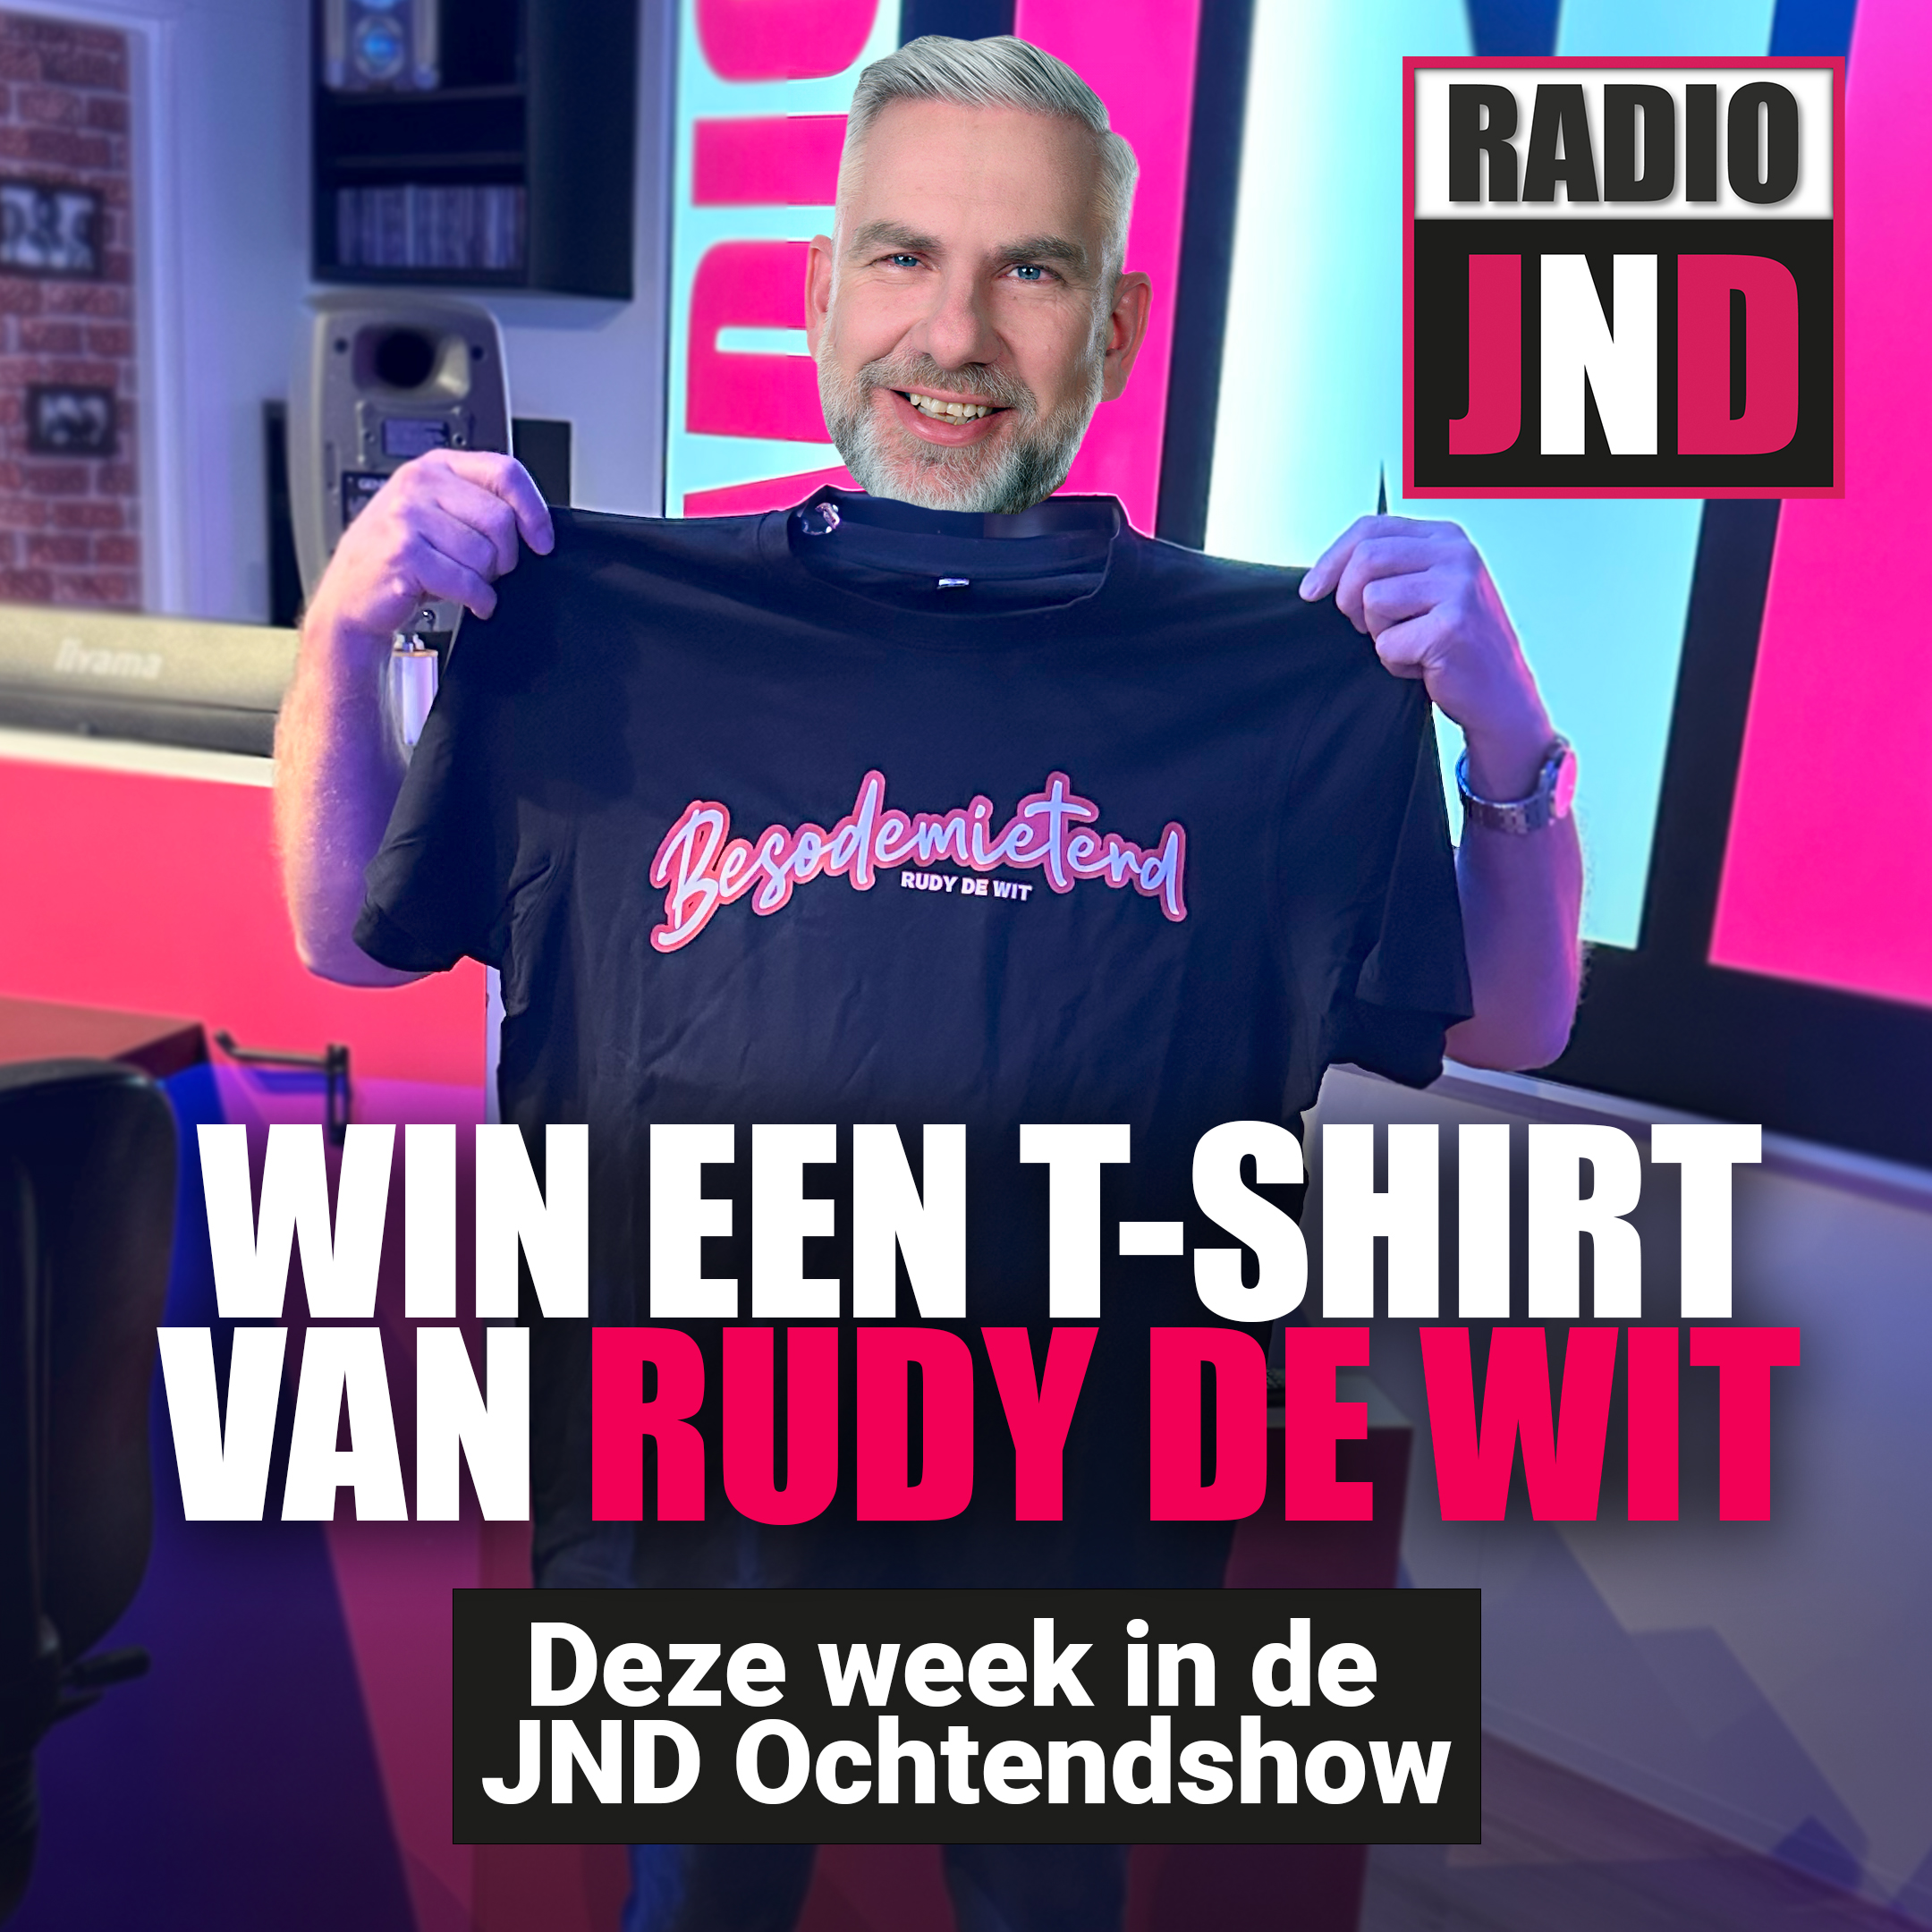 Win deze week een exclusief BESODEMTIERD t-shirt van Rudy de Wit